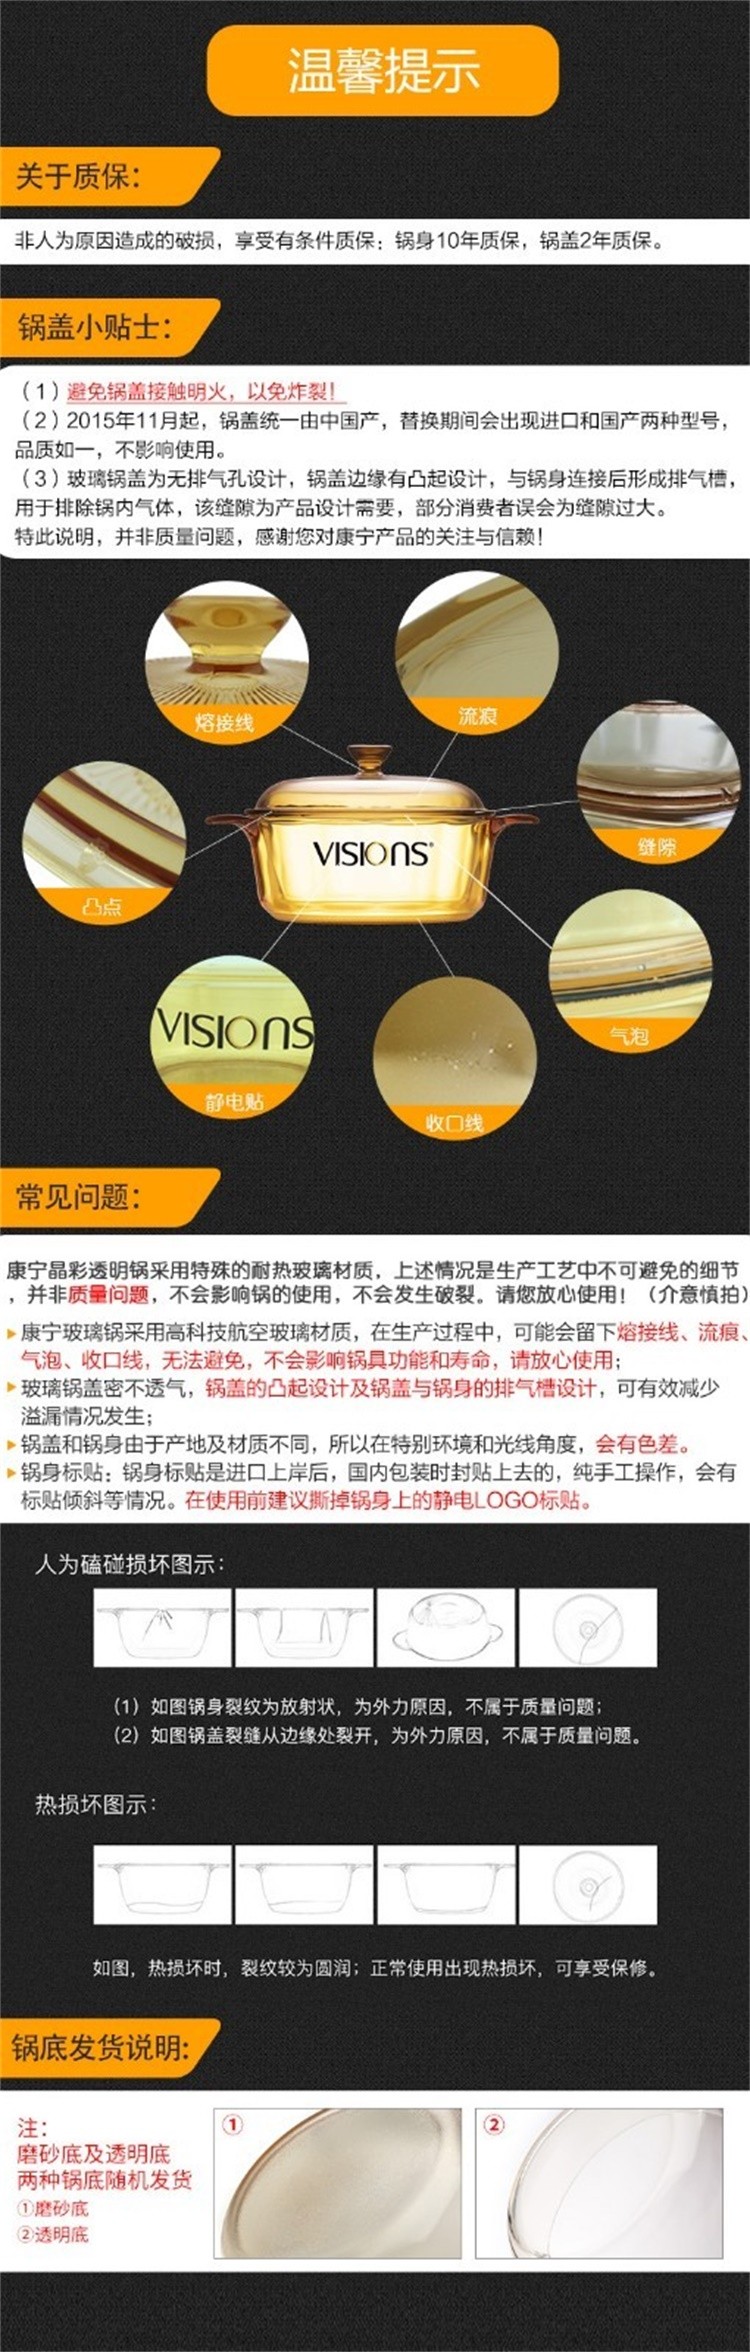 康宁晶彩透明锅1.25升 VS12 1.25L GLASS CERAMIC POT VISIONS BRAND详情图3